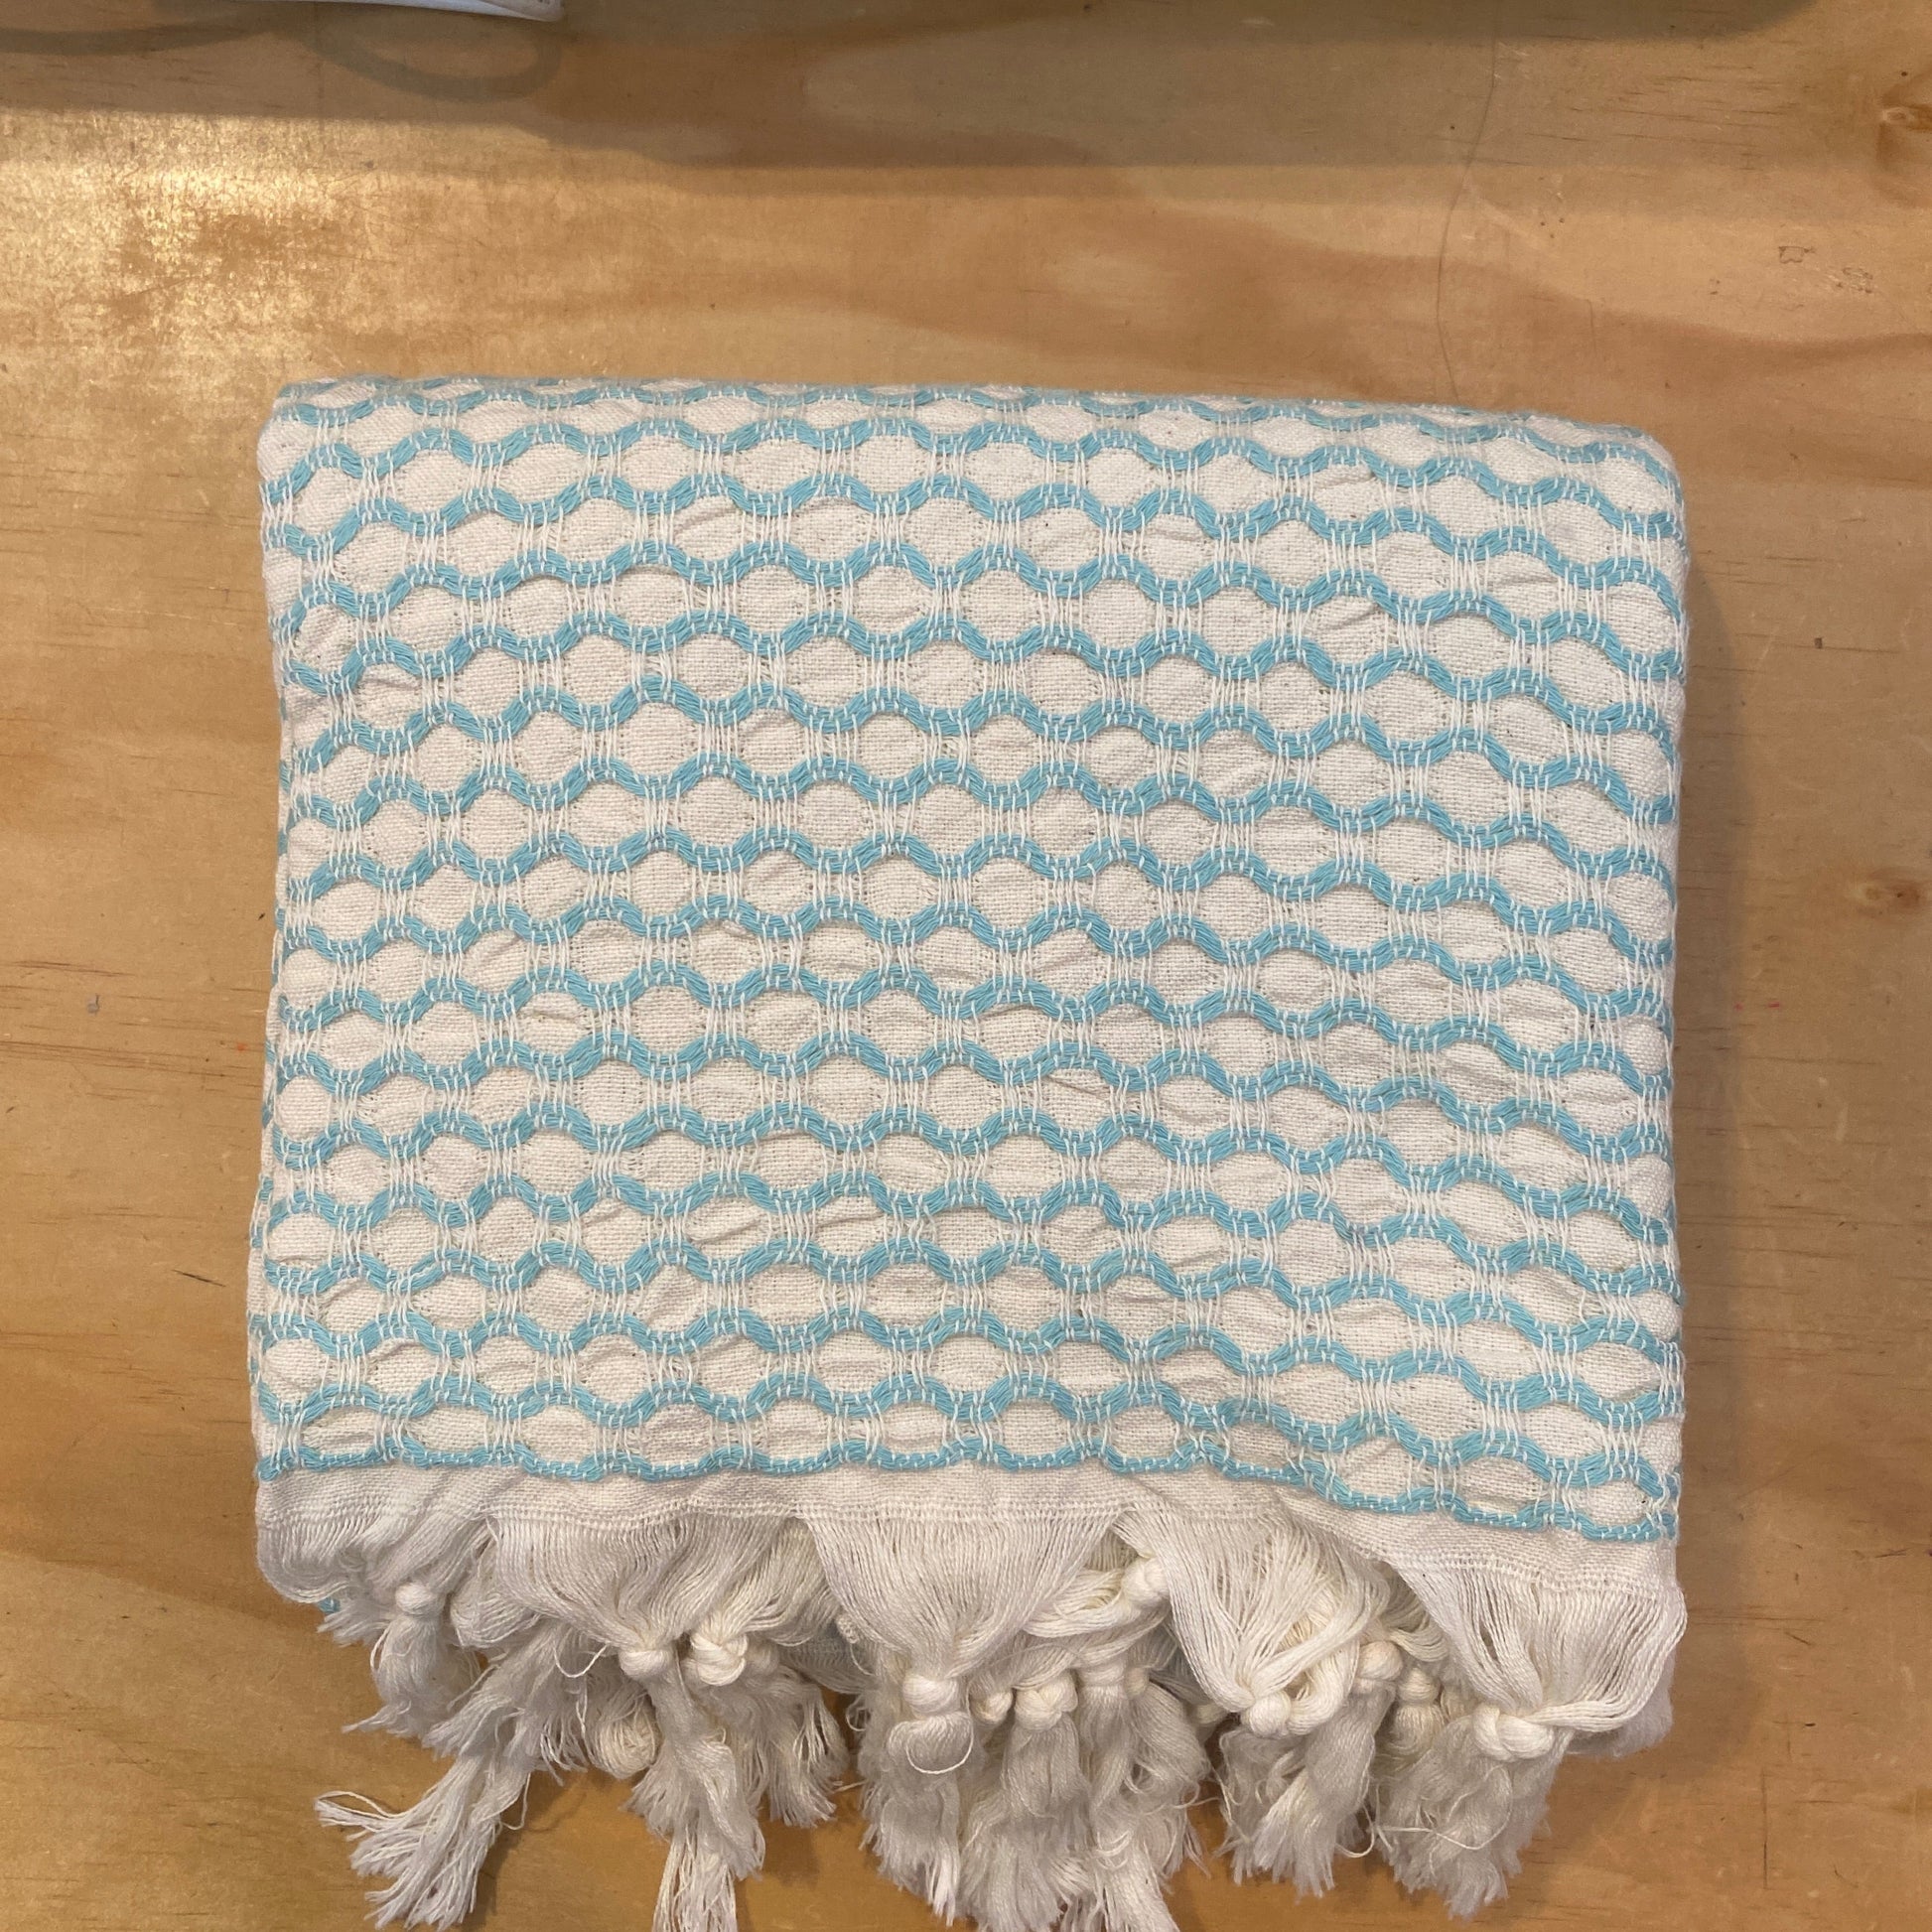 Turkish Towel - Piastrelle Towel